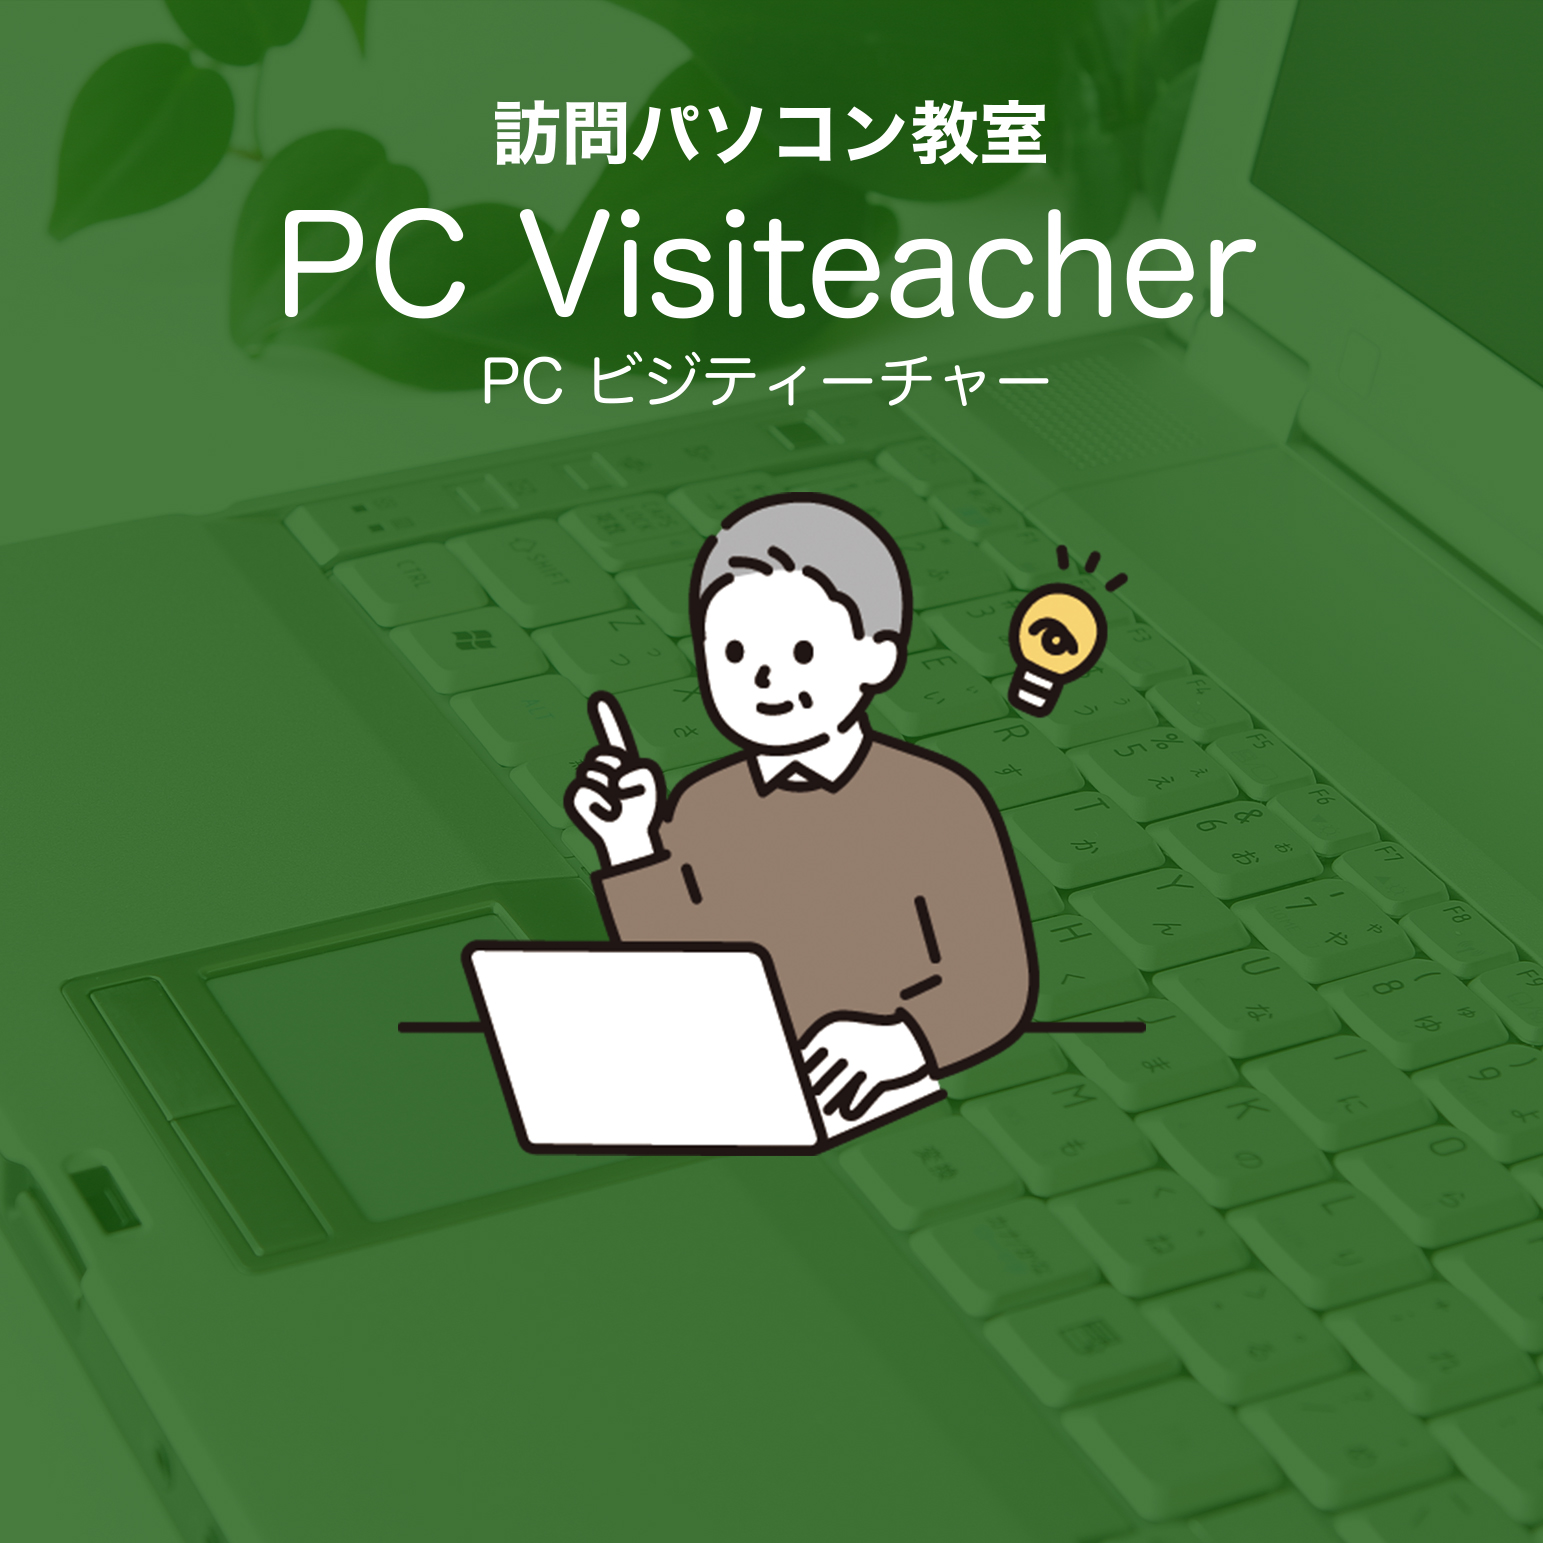 訪問パソコン教室「PC Visiteacher」PCビジティーチャー